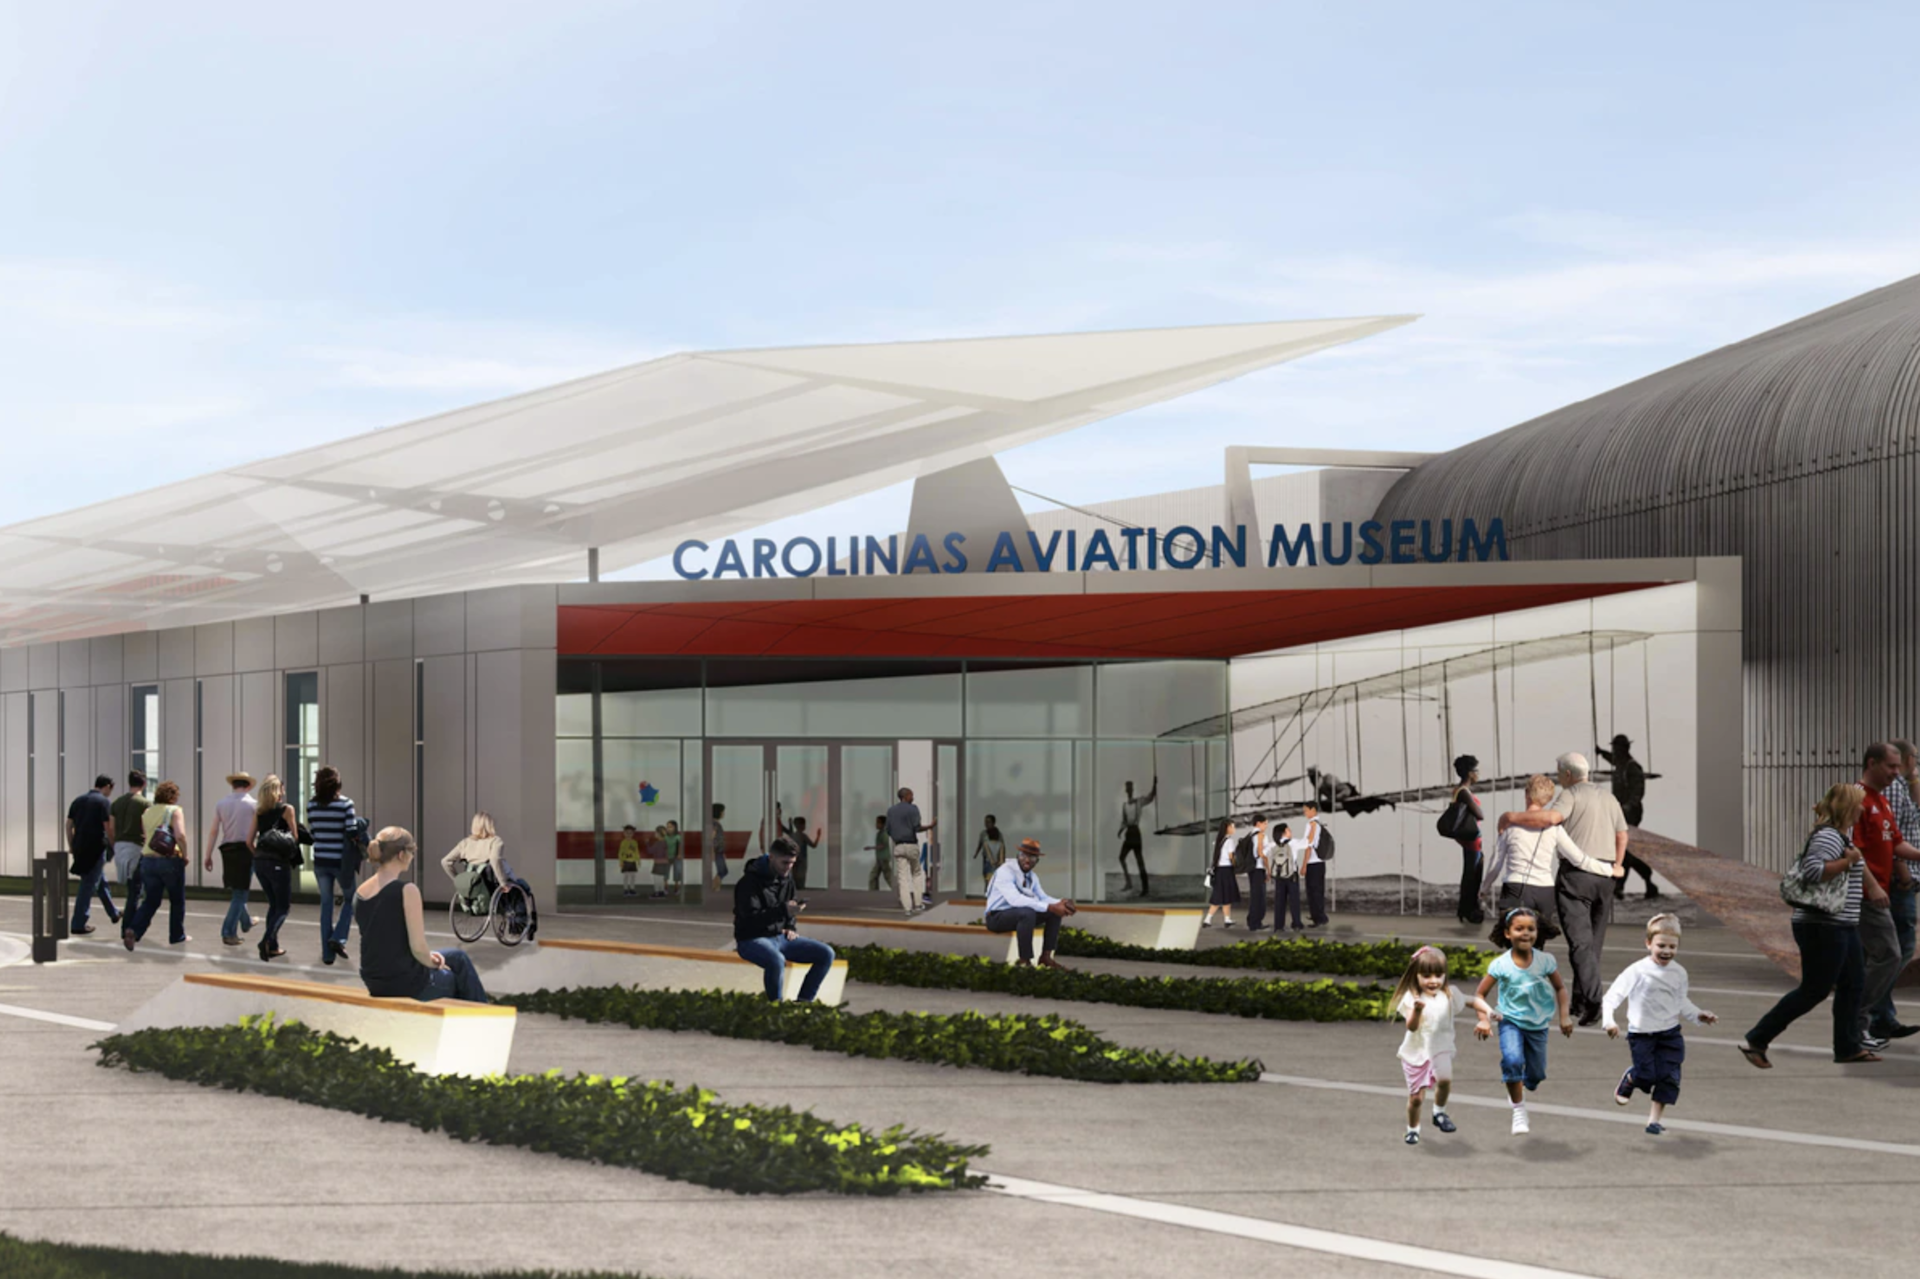 Carolina-aviation-museum-render-2022-RM.png